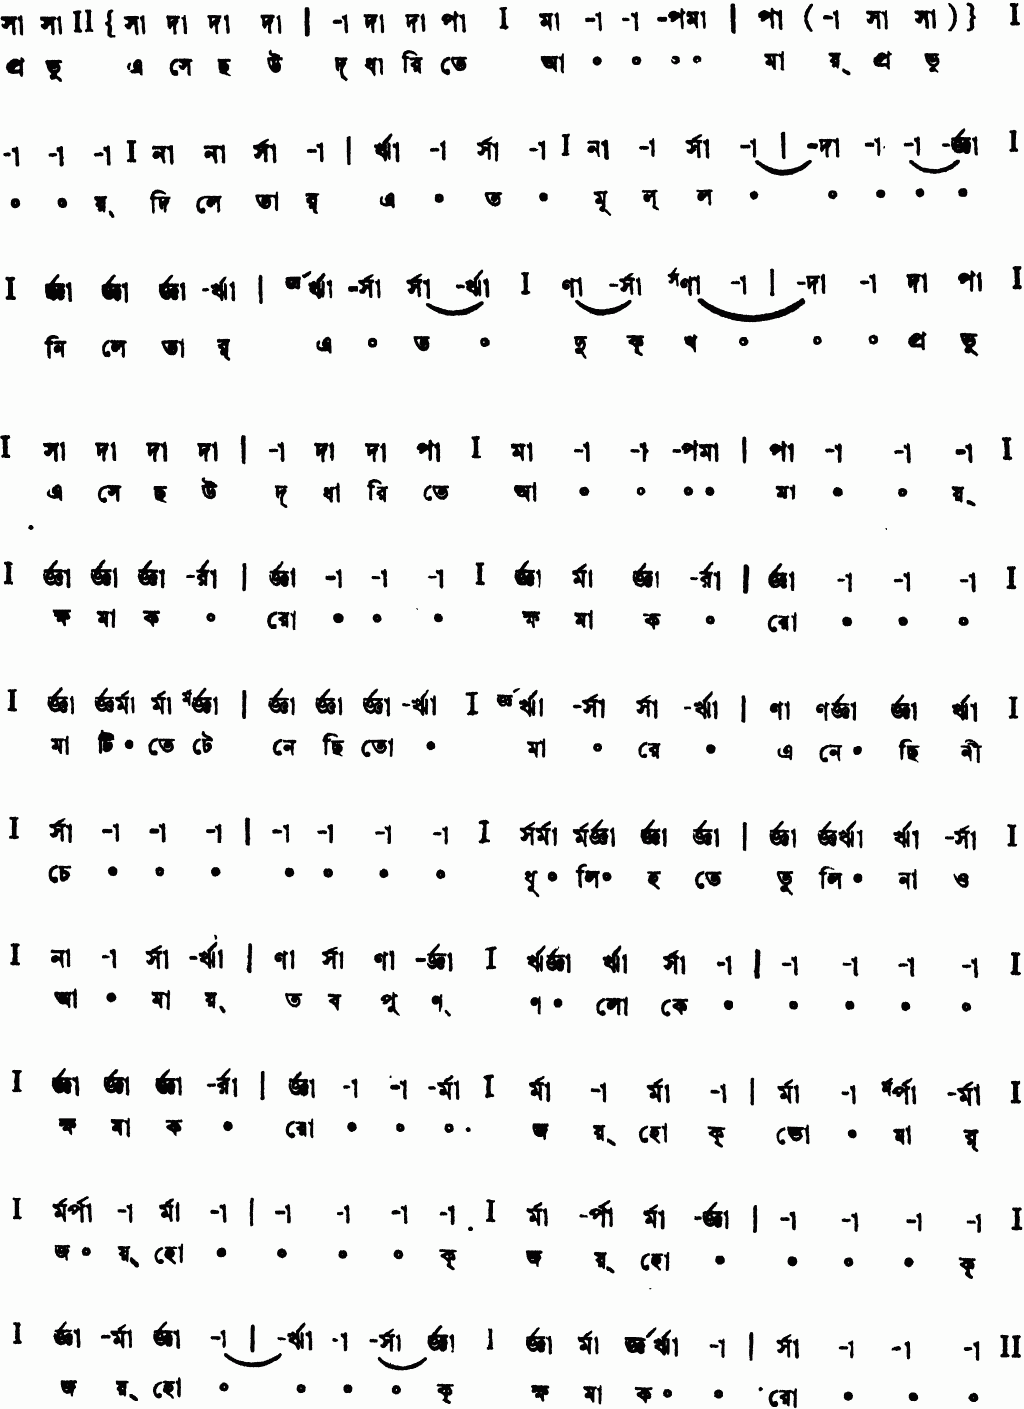 Notation probhu esechho